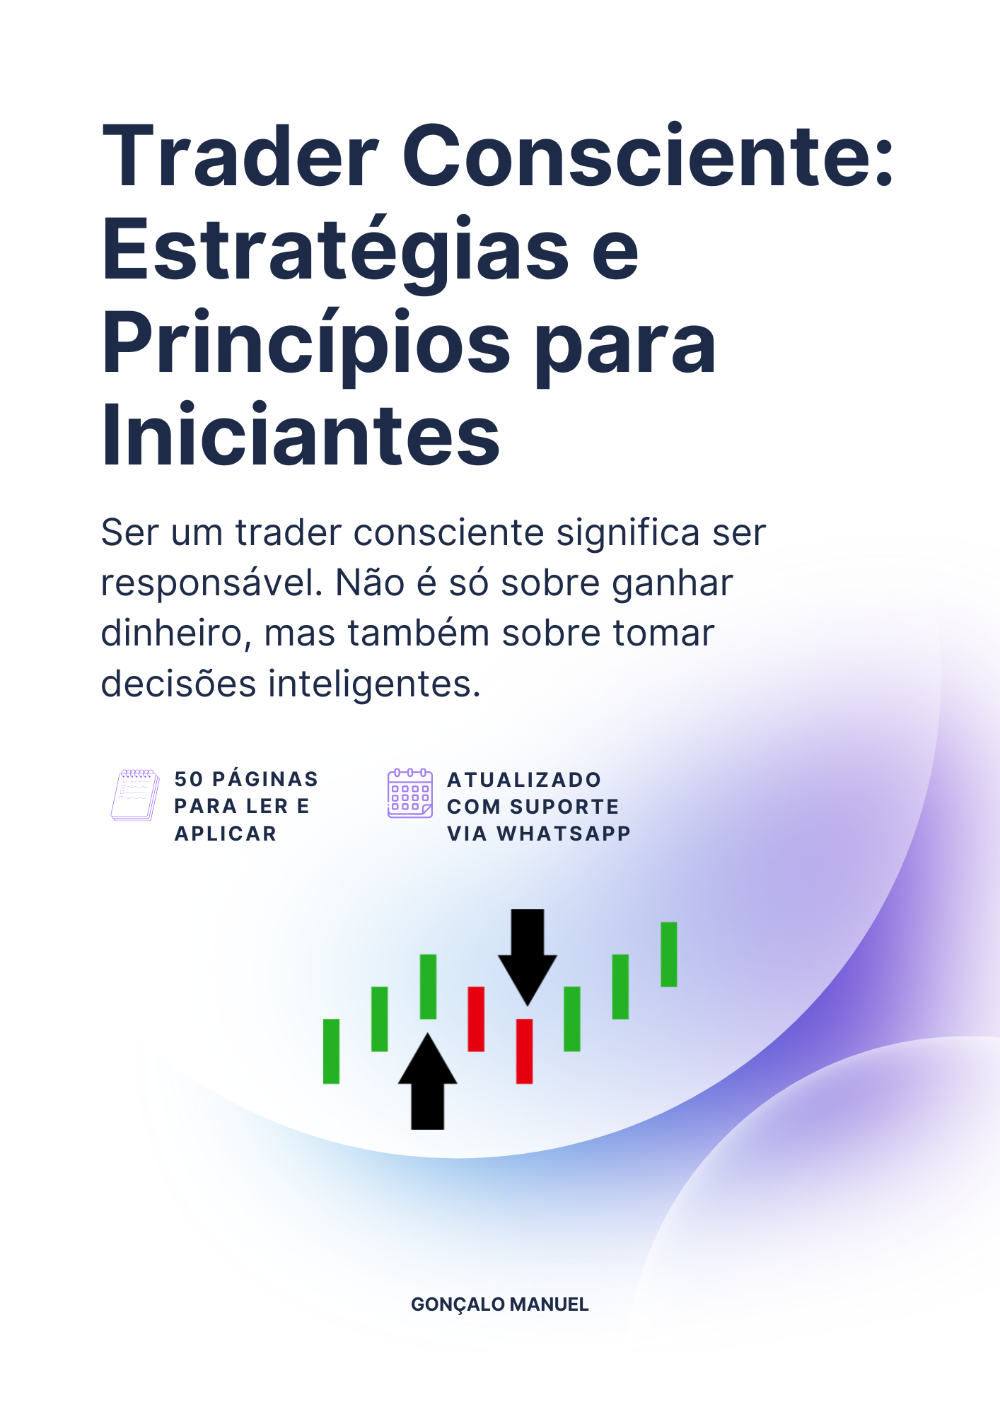 trader_consciente_estrategias_e_principios_para_iniciantes_6172